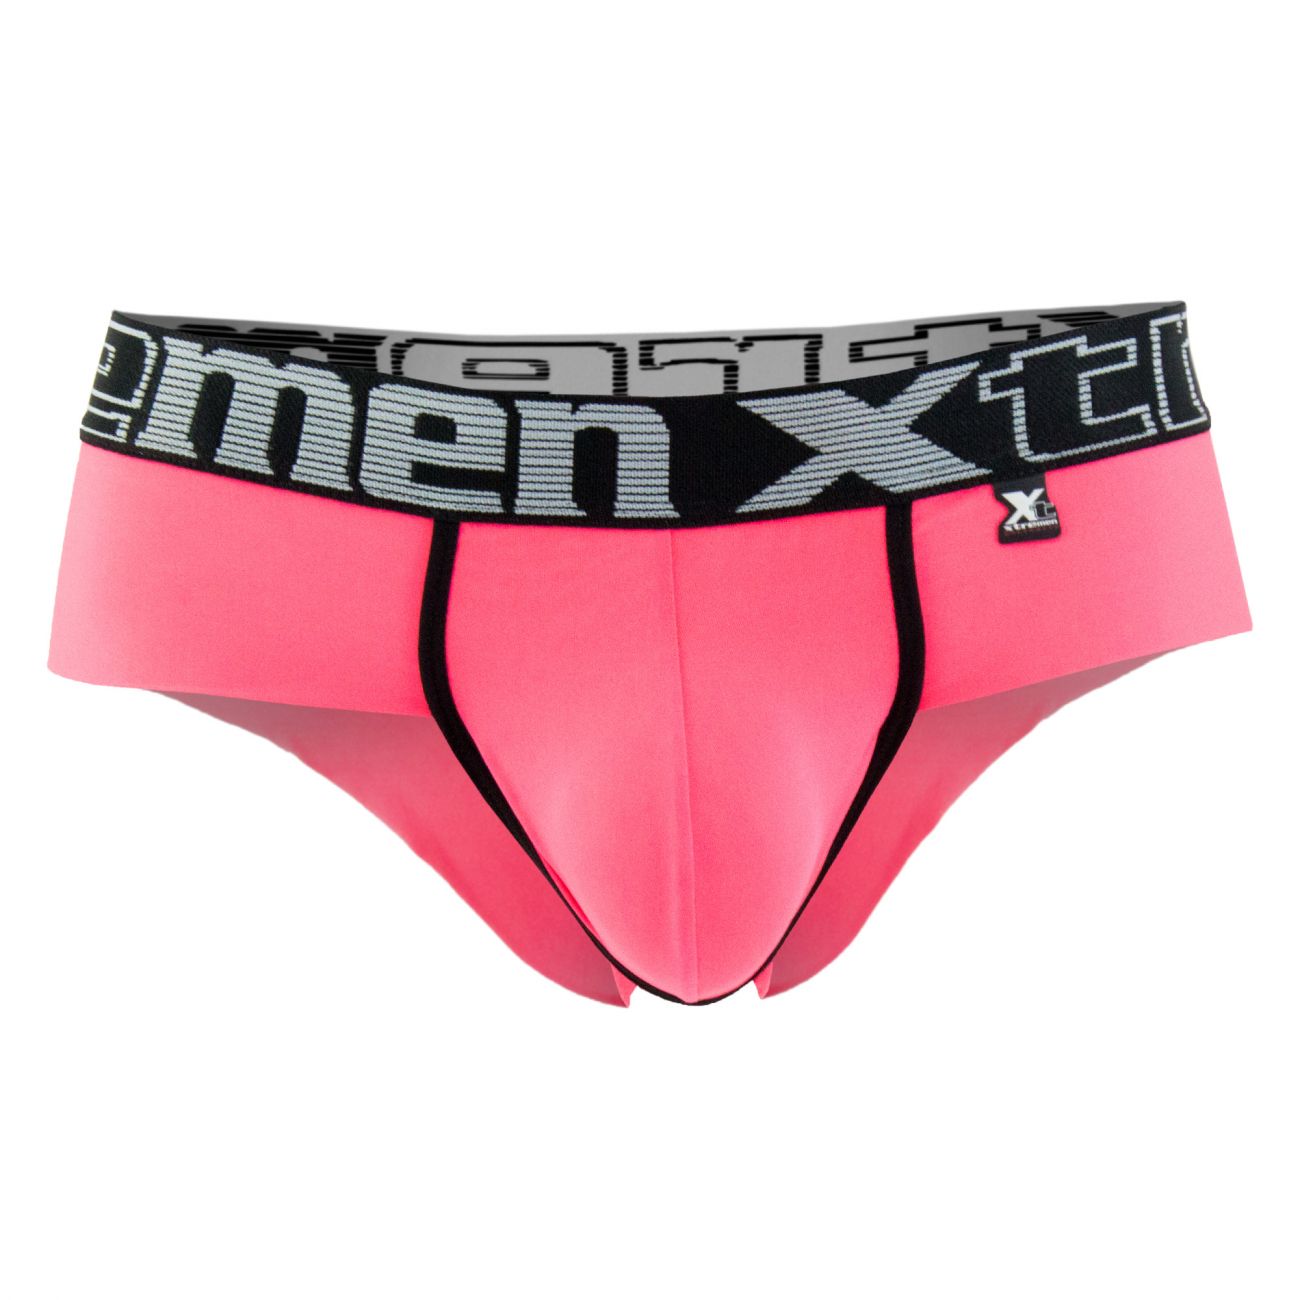 Xtremen 91020 Microfiber Briefs Pink